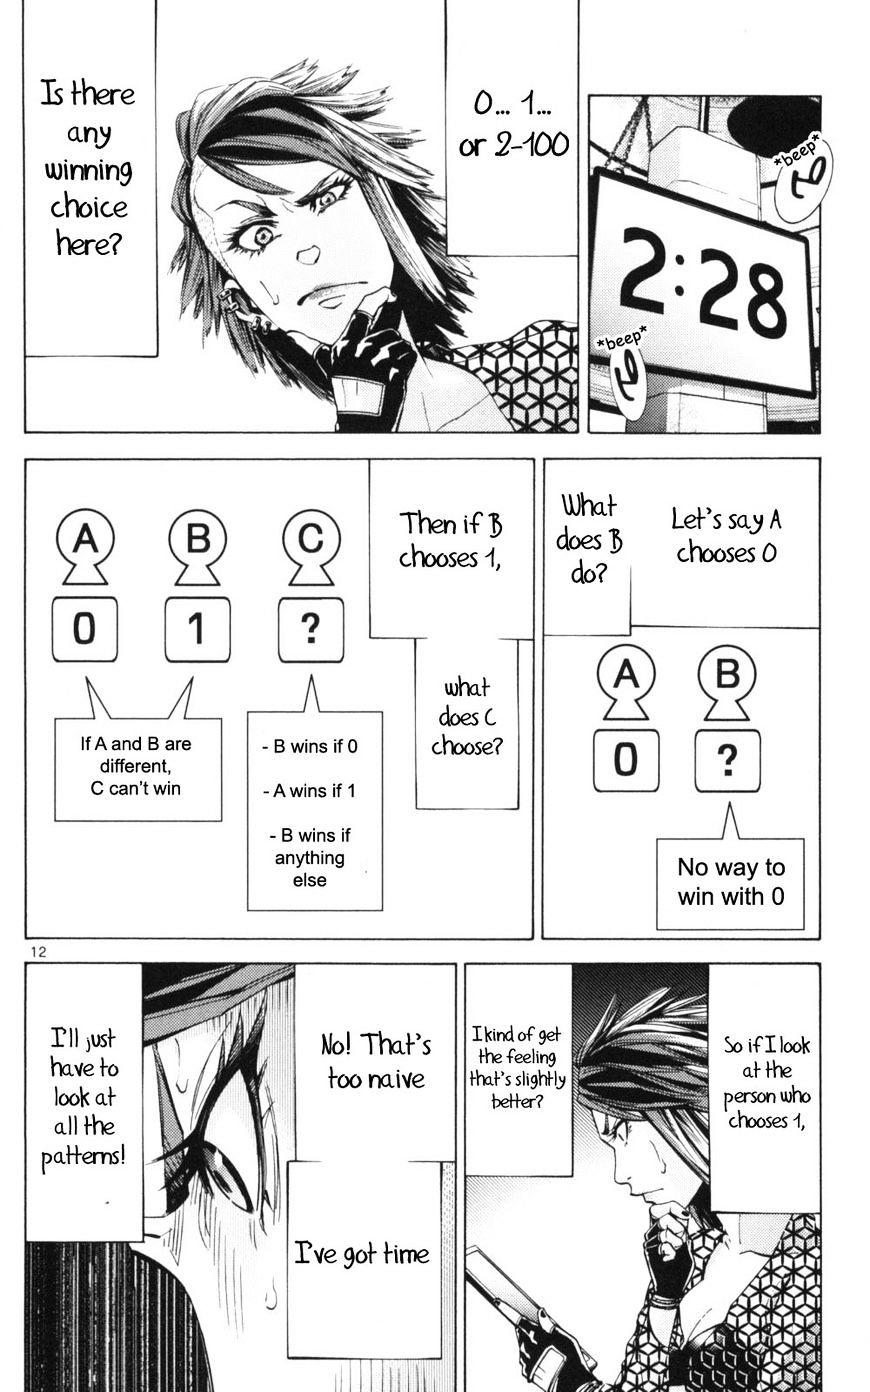 Imawa No Kuni No Alice Chapter 51.3 : Side Story 6 - King Of Diamonds (3) page 12 - Mangakakalot